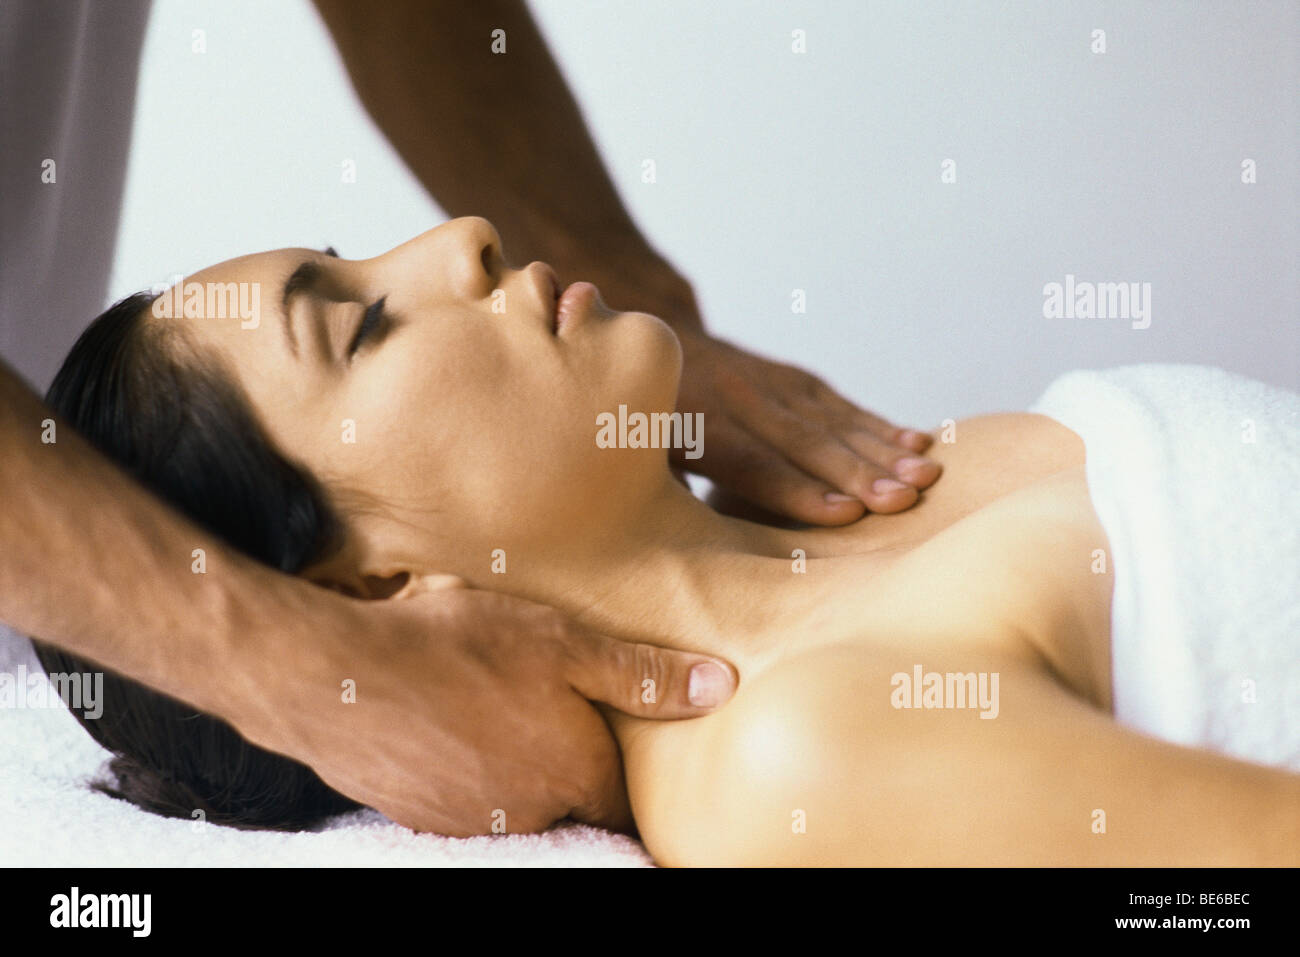 Woman enjoying massage Stock Photo